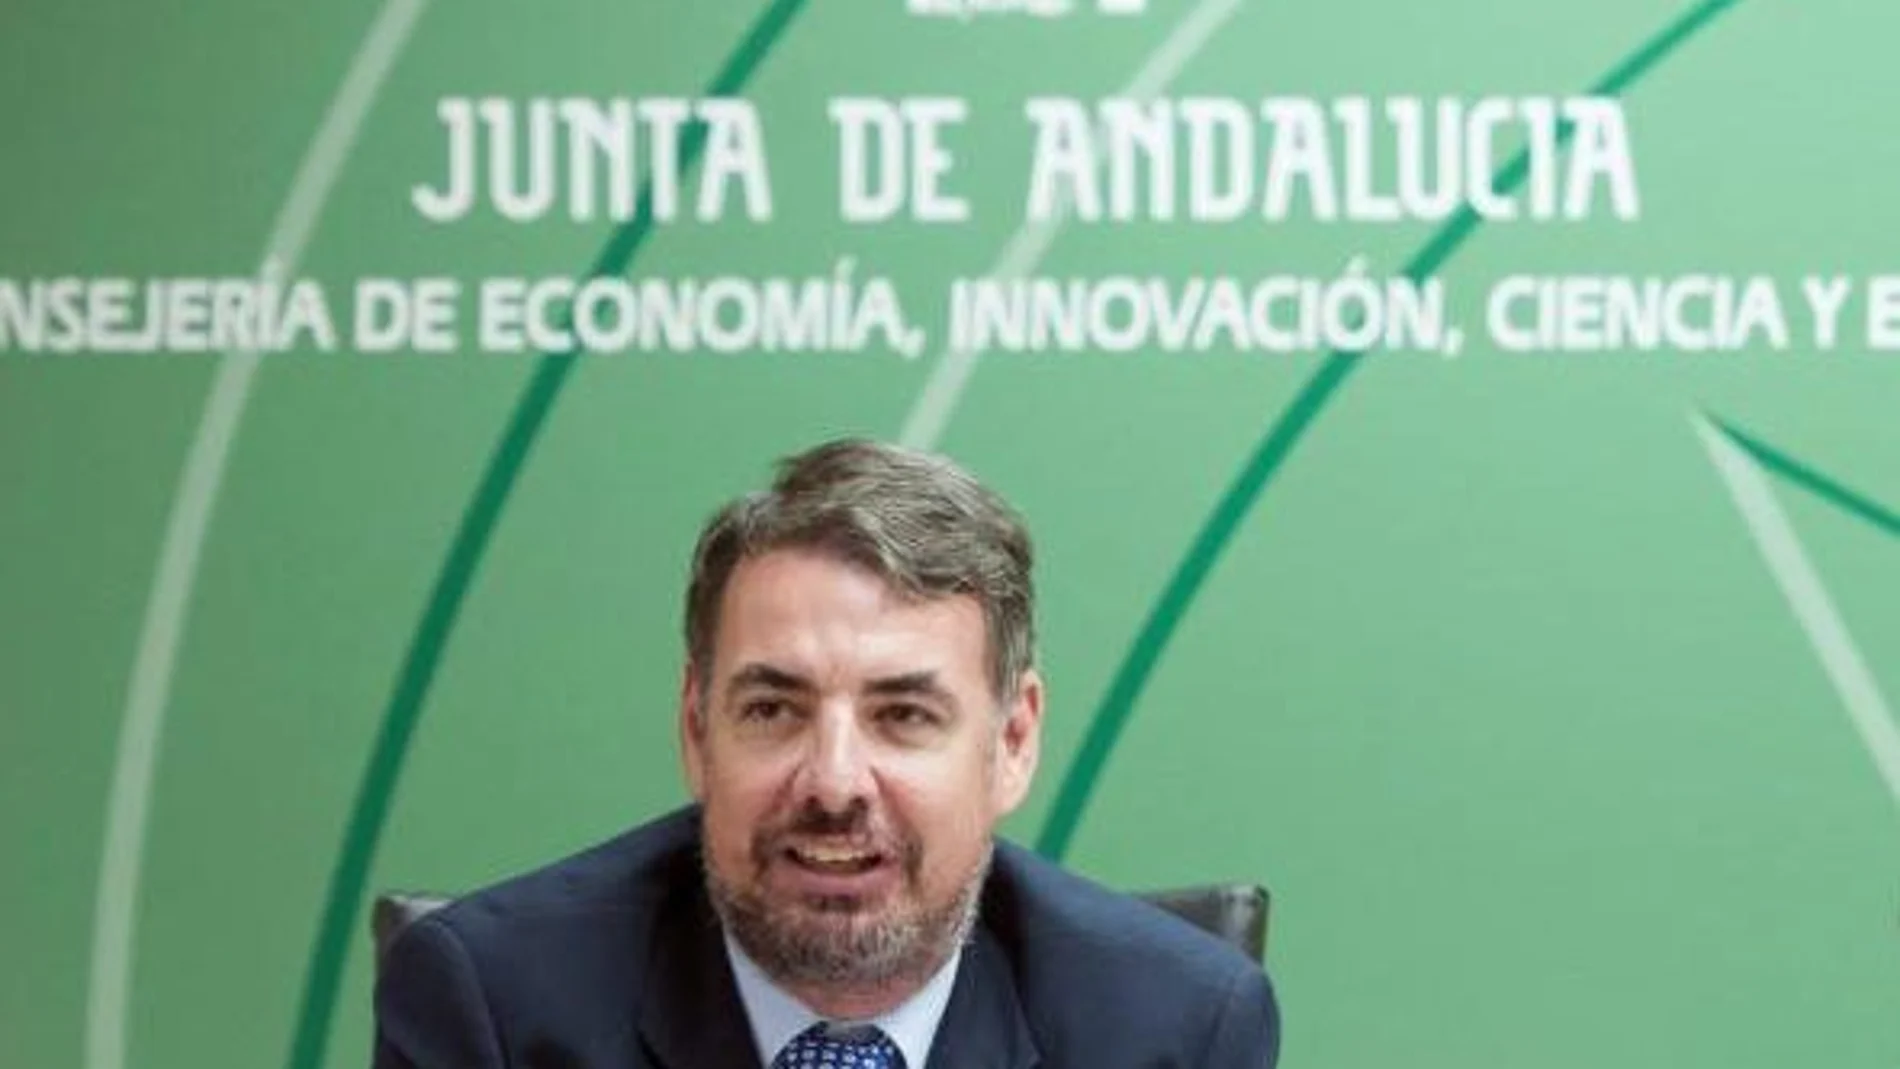 El interventor general de la Junta de Andalucía es en la actualidad Vicente Cecilio Fernández